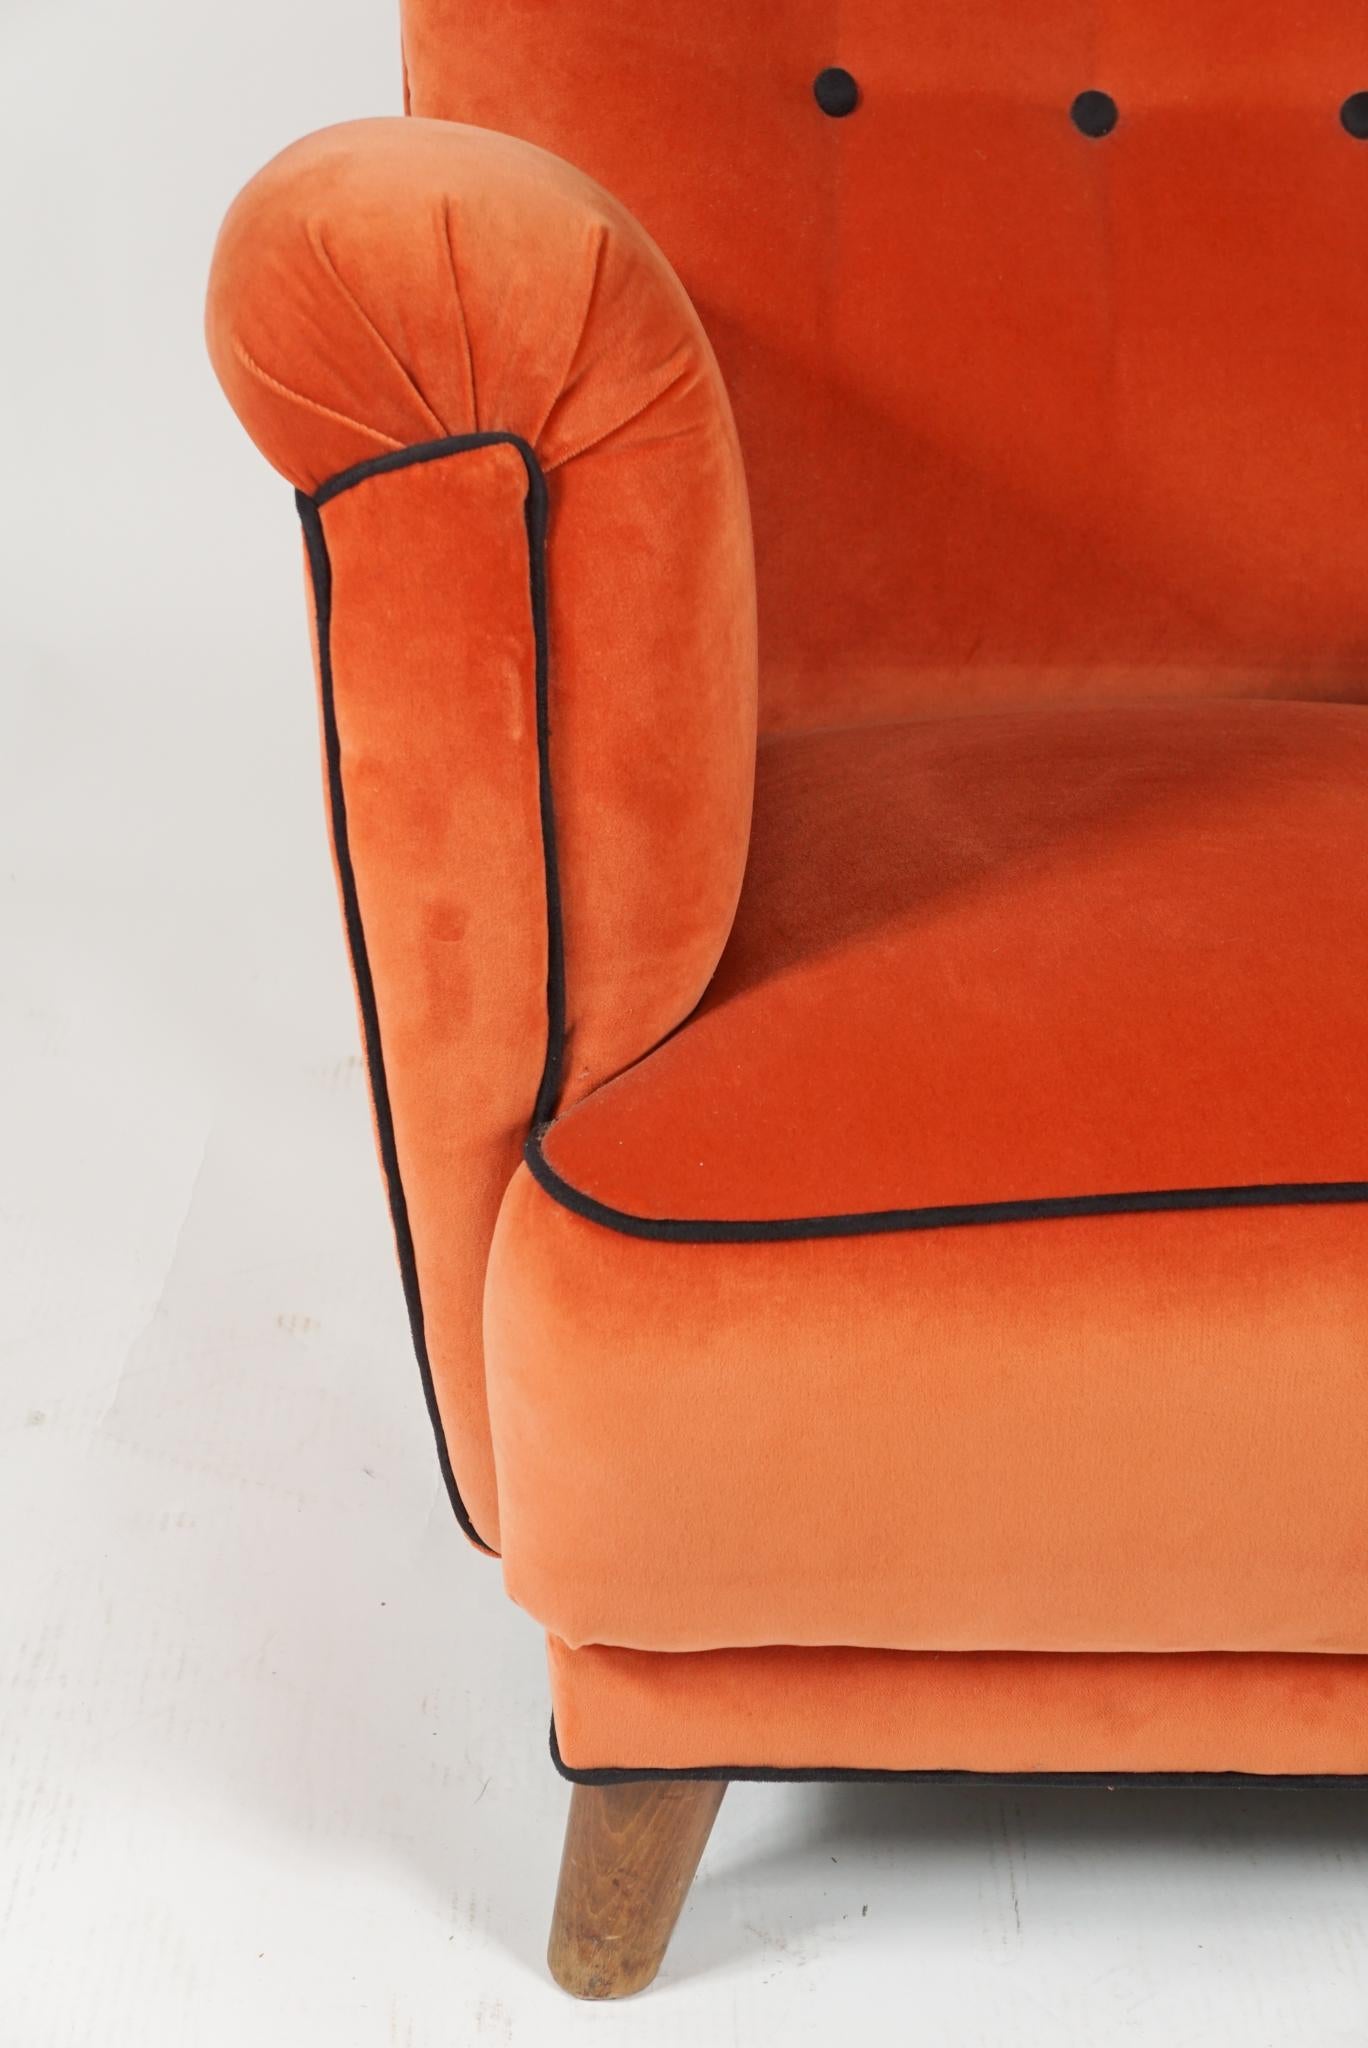 Orange Club Chair 2